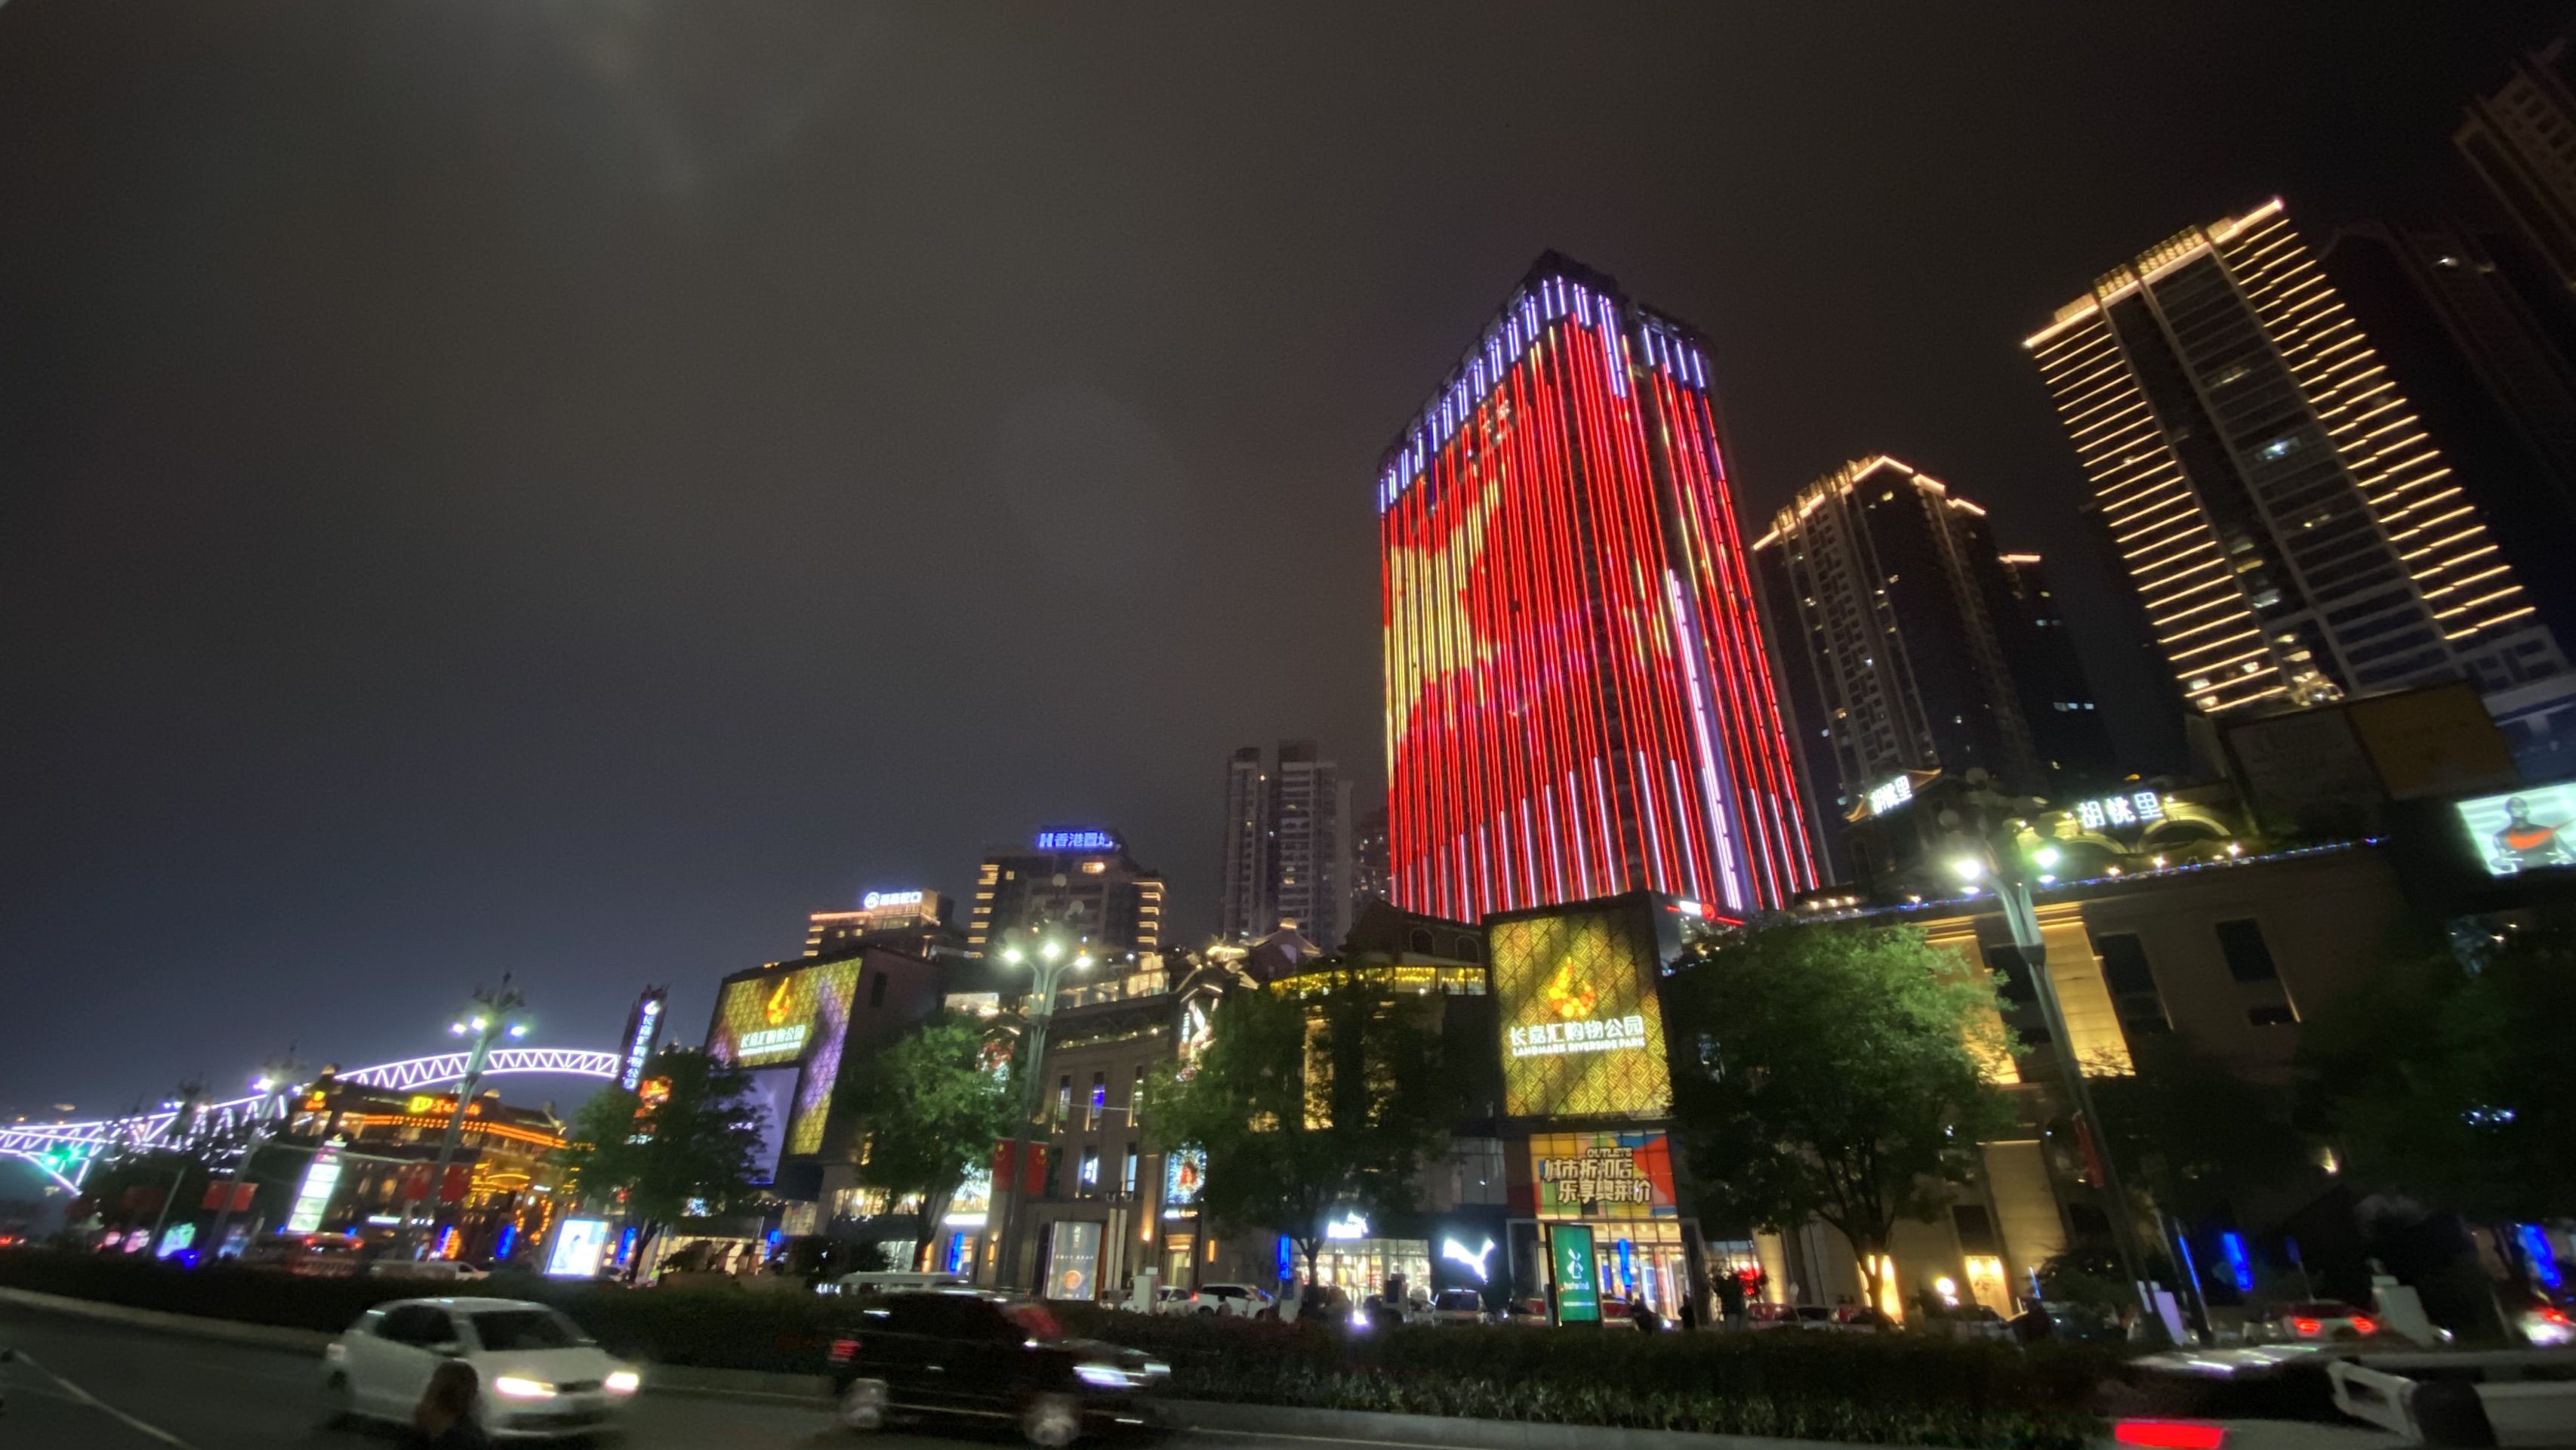 重庆长嘉汇弹子石老街夜晚灯光不错观看重庆夜景的好地方